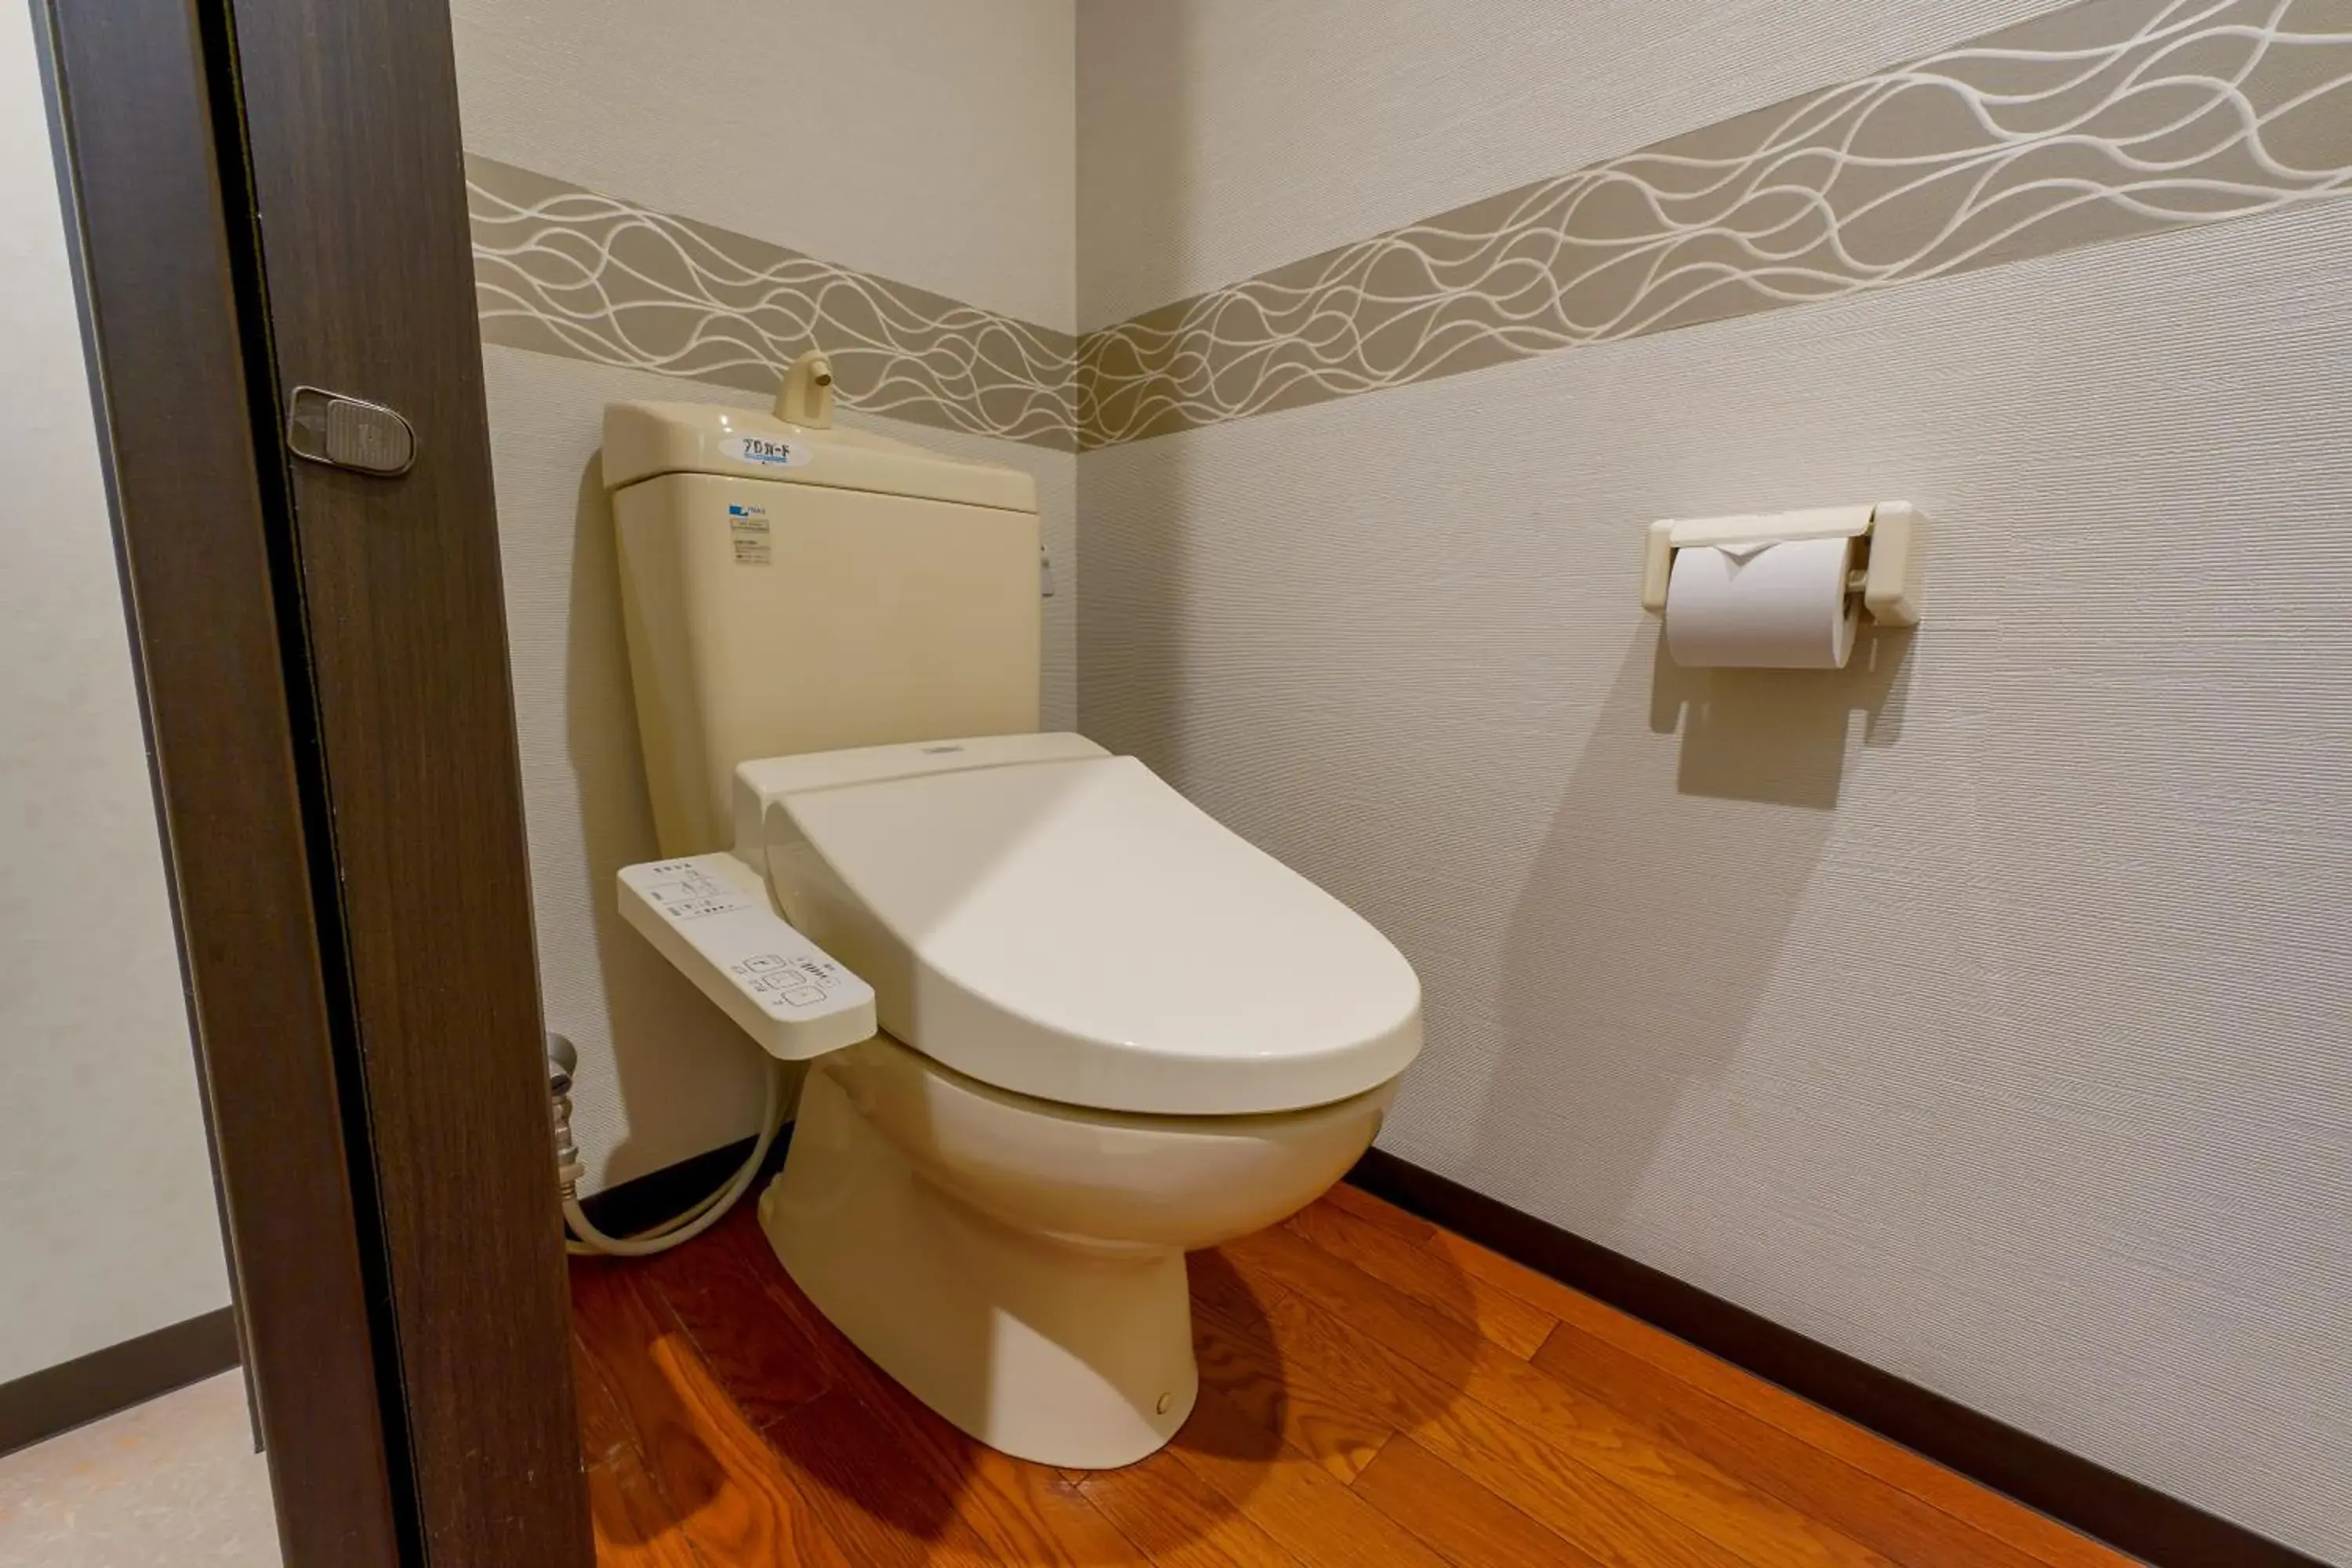 Photo of the whole room, Bathroom in Ryokan Sanoya Hotel